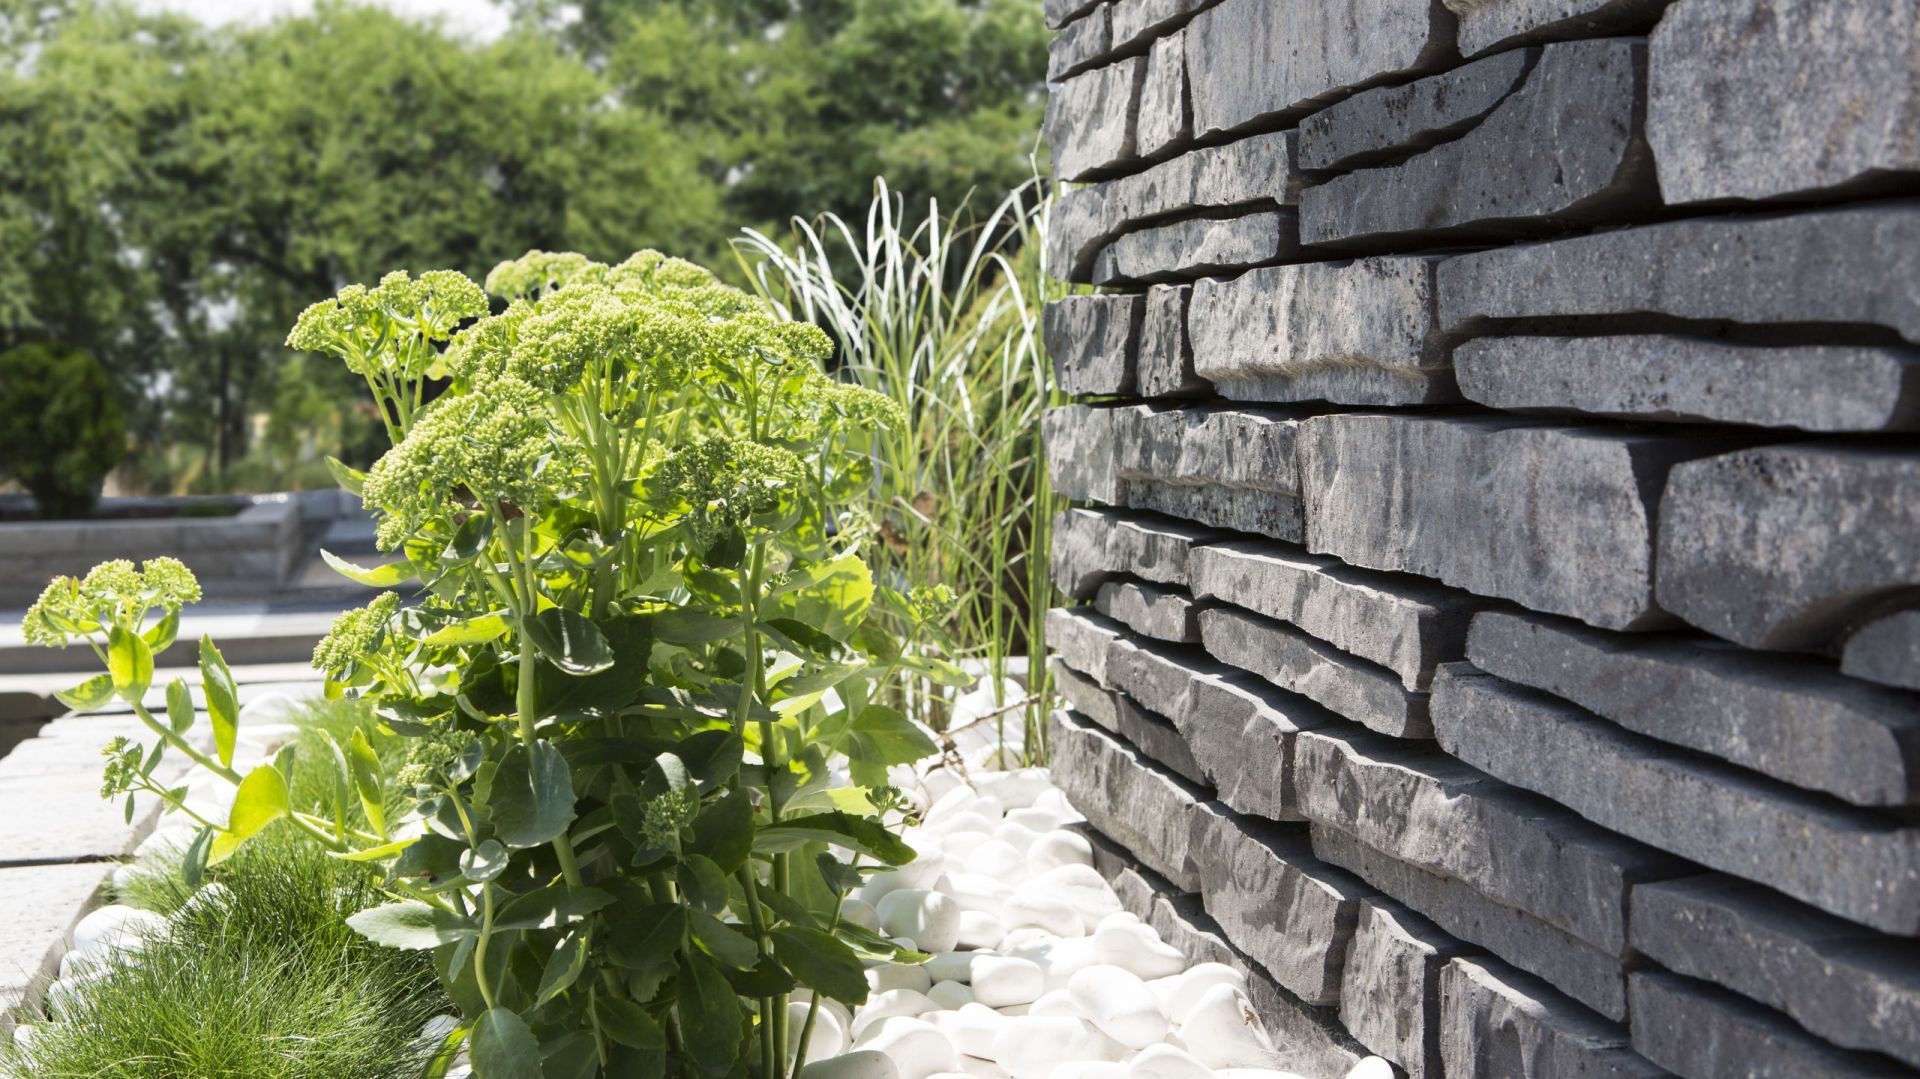 Nawierzchnie ogrodowe - betonowe murki inspirowane kamieniem